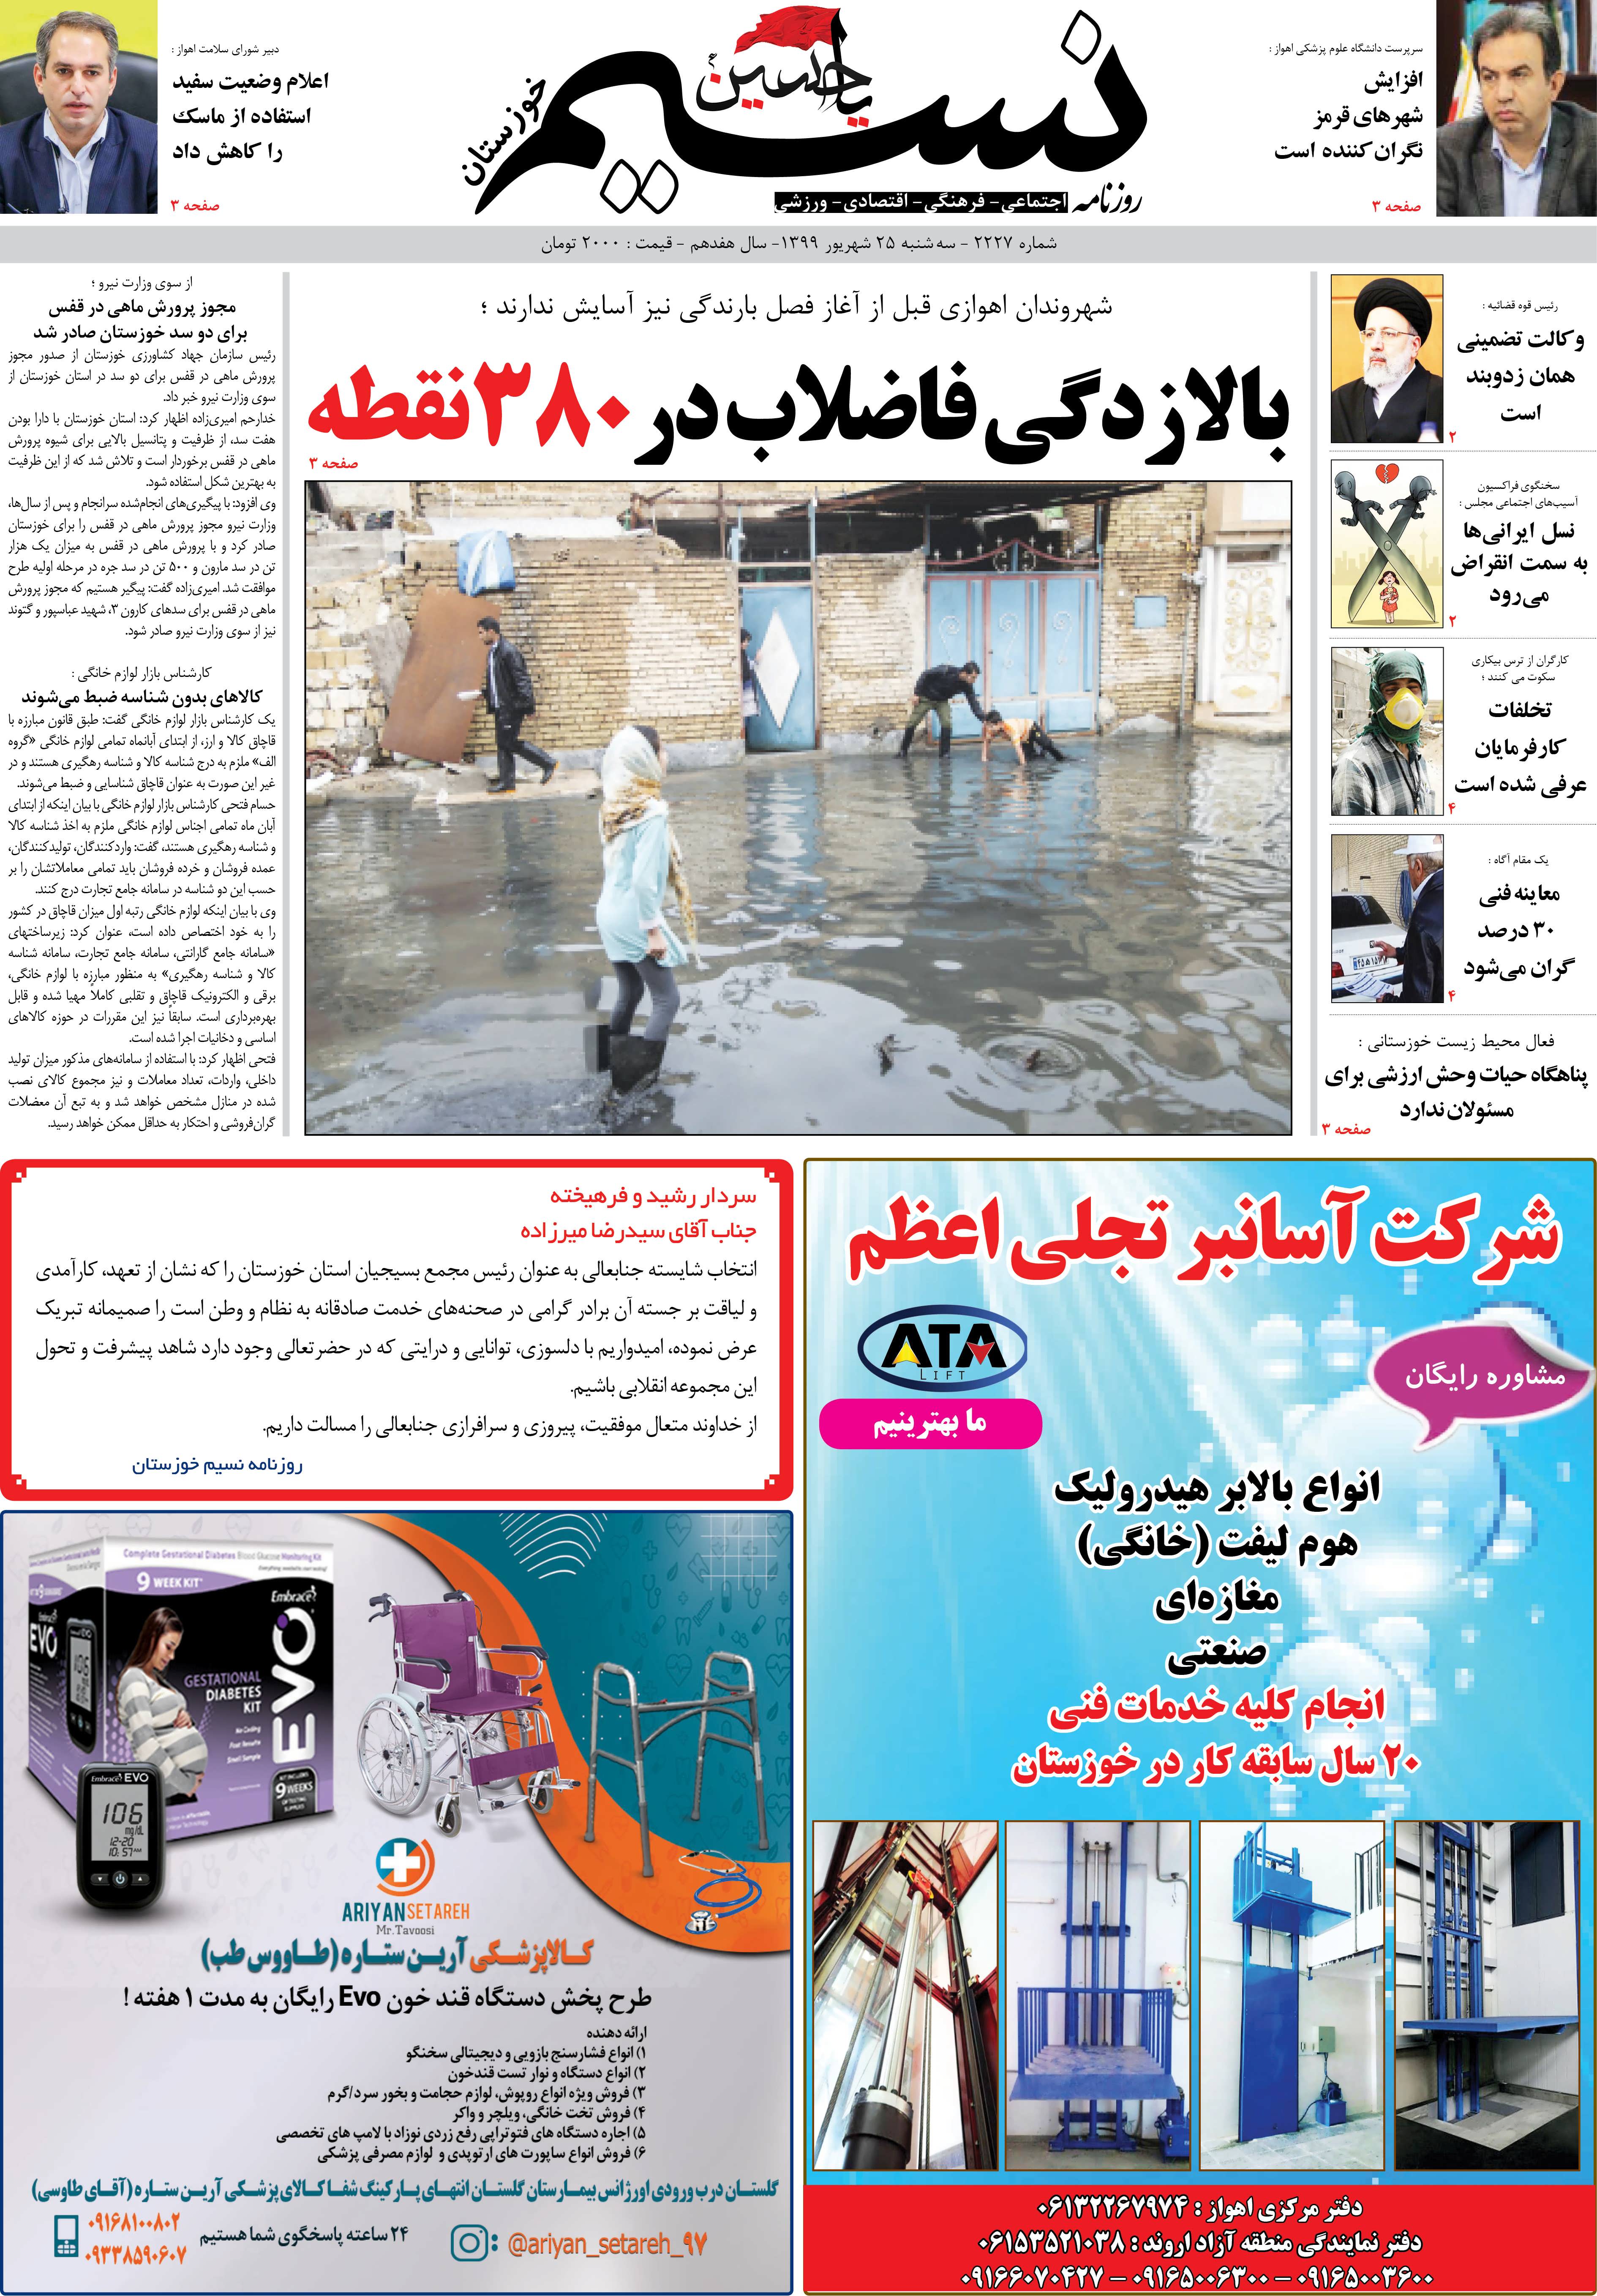 صفحه اصلی روزنامه نسیم شماره 2227 